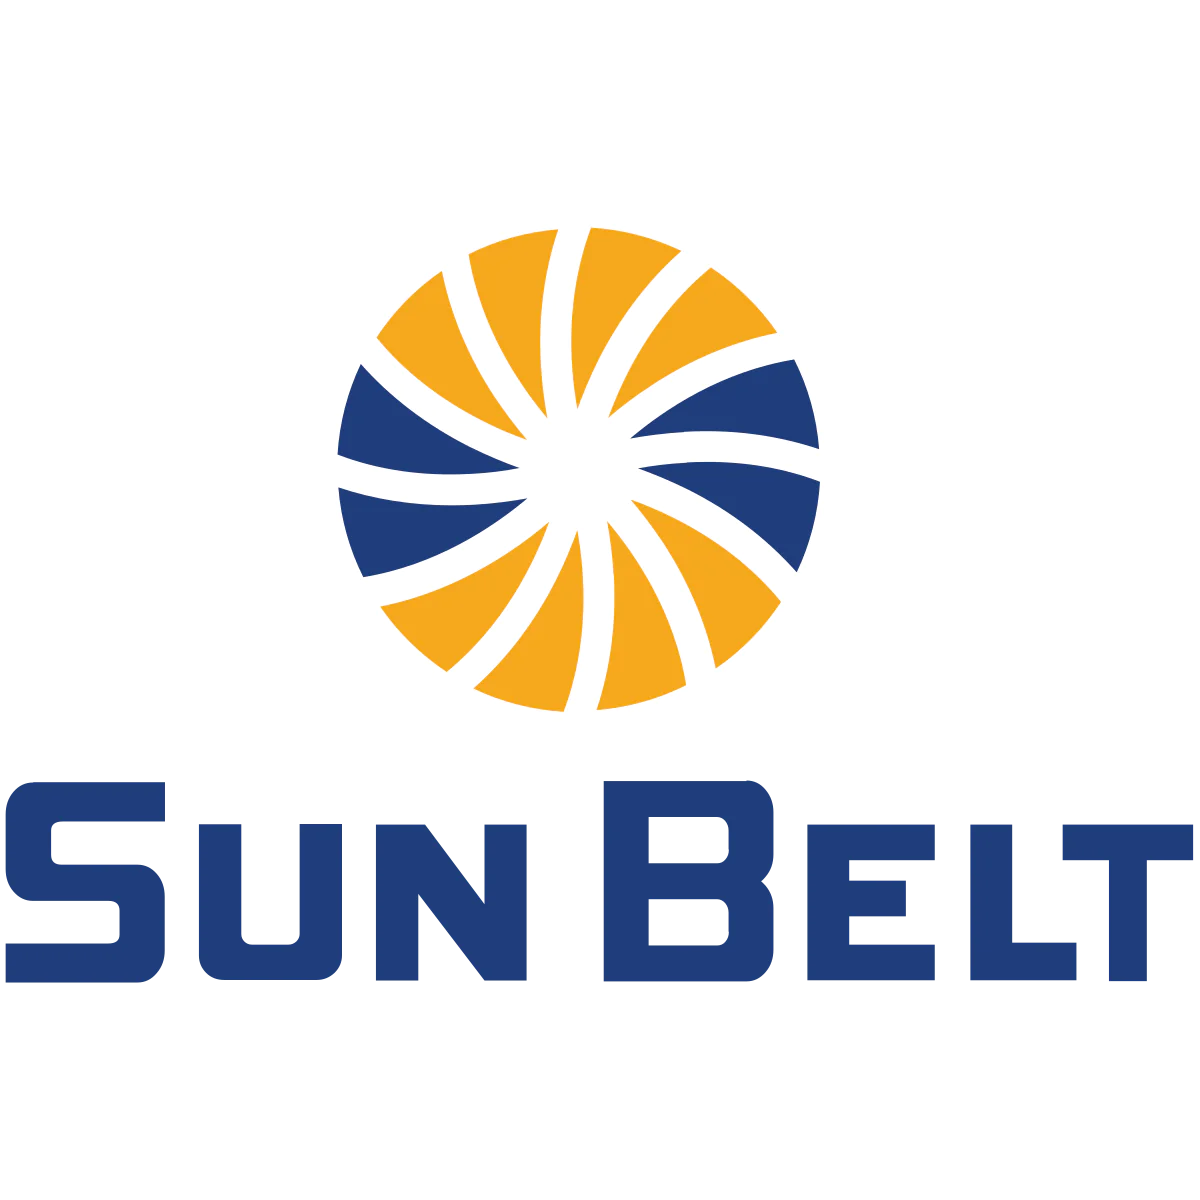 Sun Belt Logo